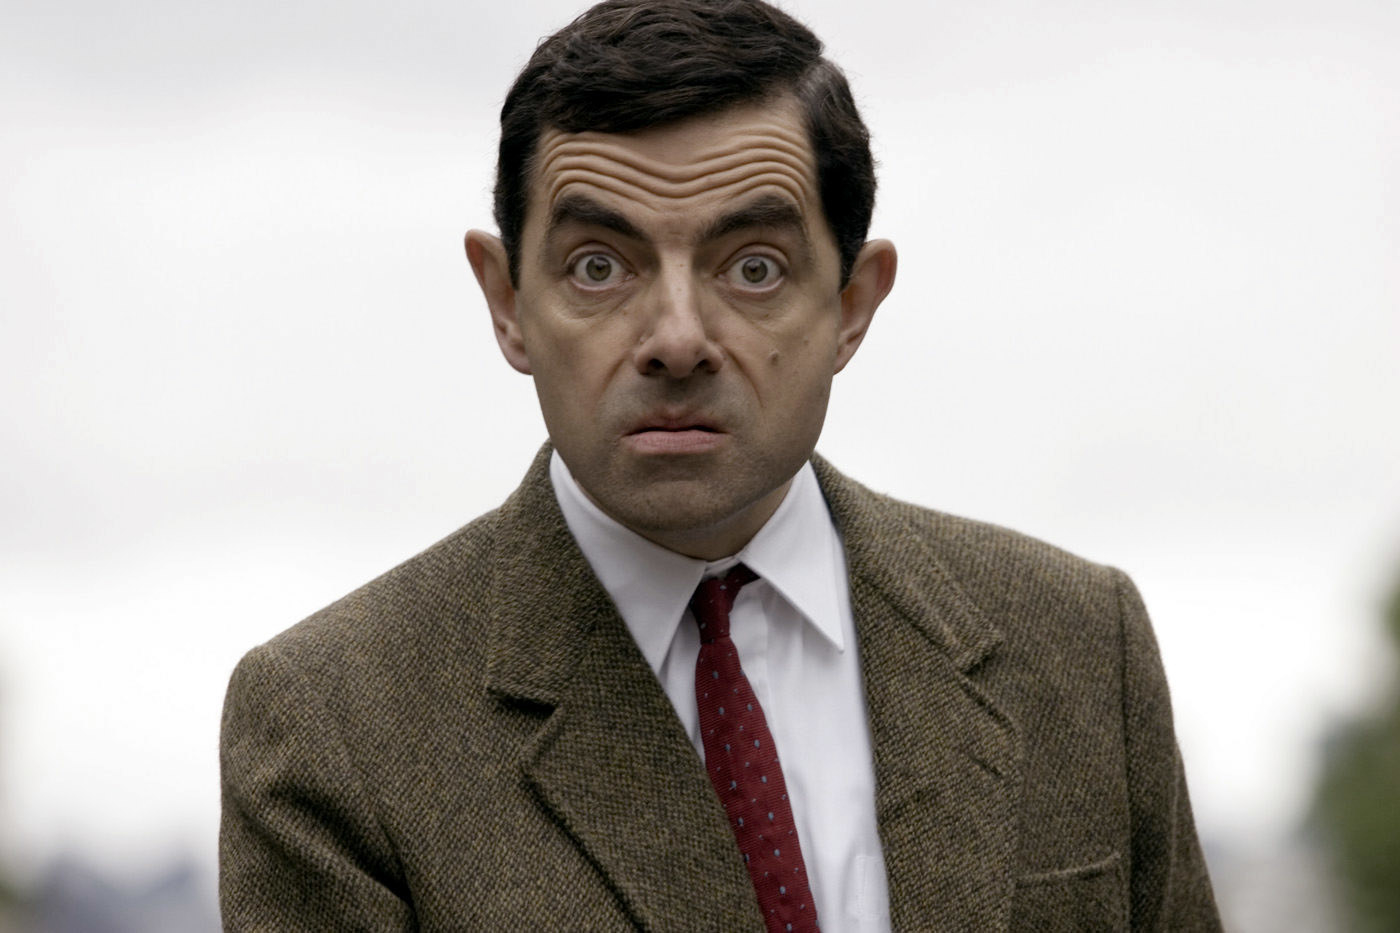 Rowan as Mr. Bean